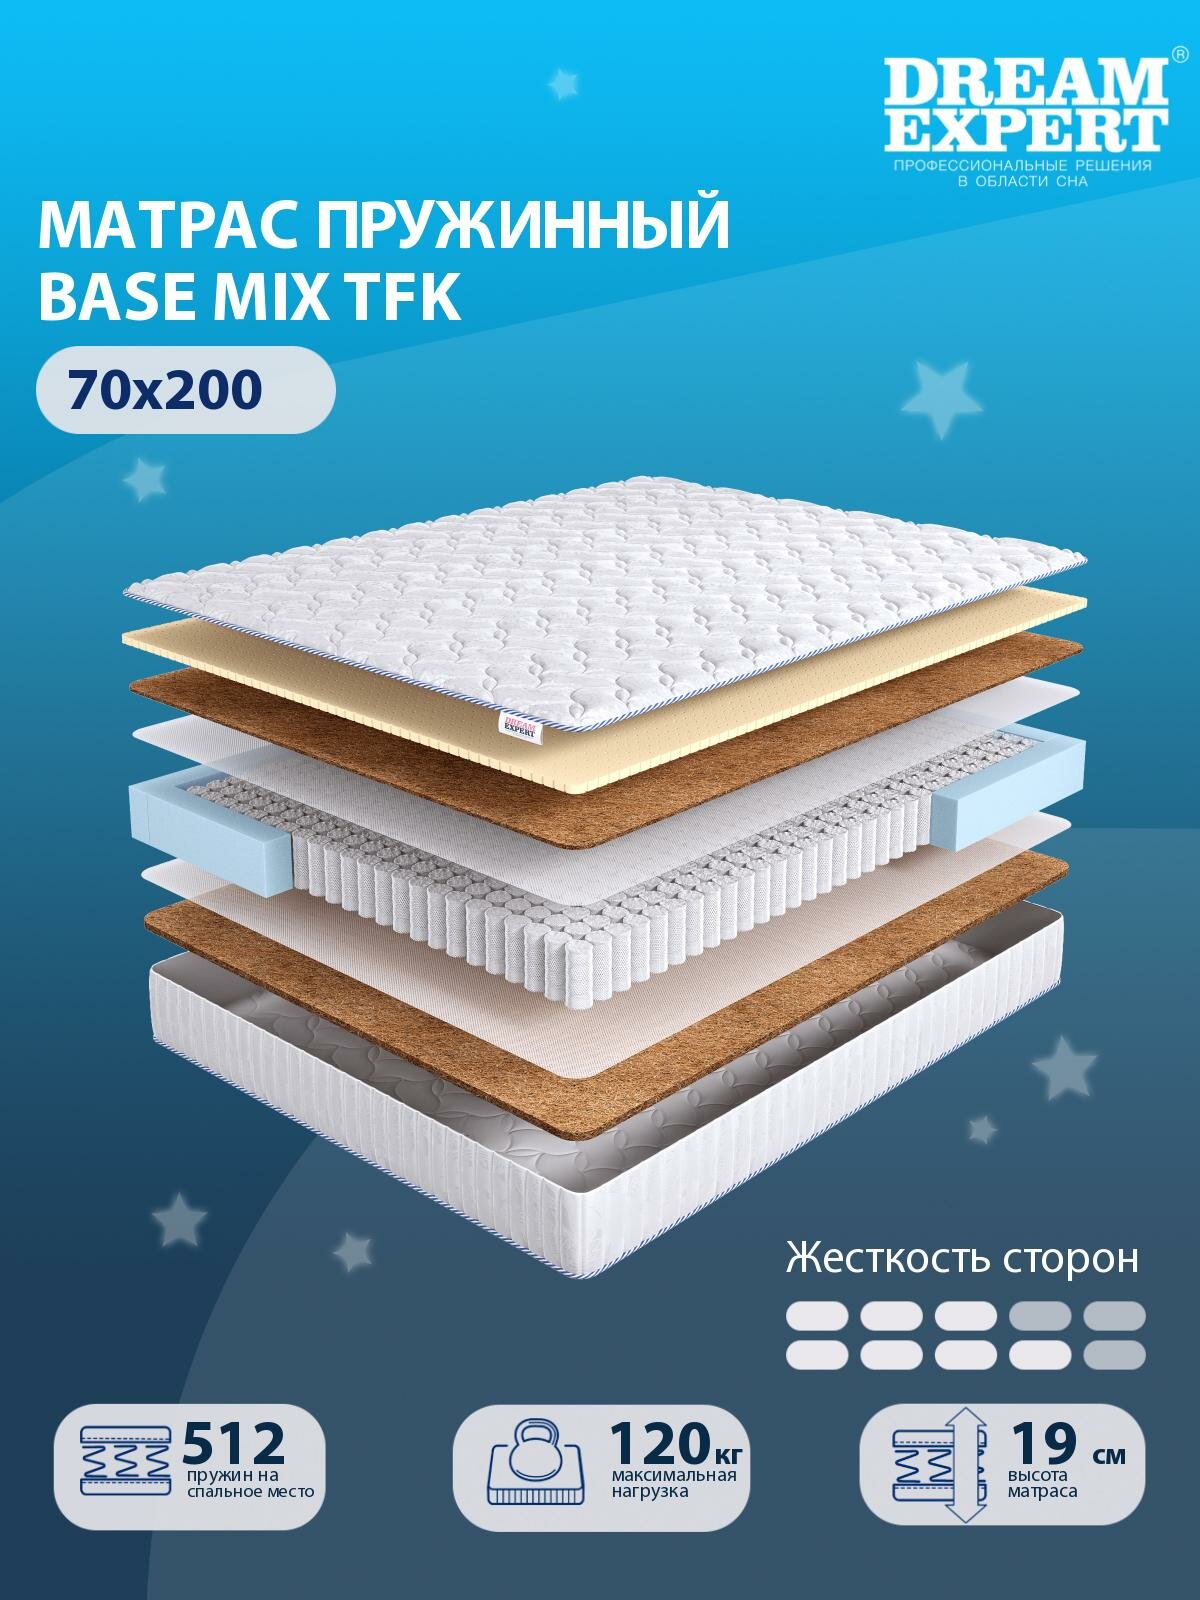 Матрас DreamExpert Base Mix TFK средней и выше средней жесткости, детский, независимый пружинный блок, на кровать 70x200